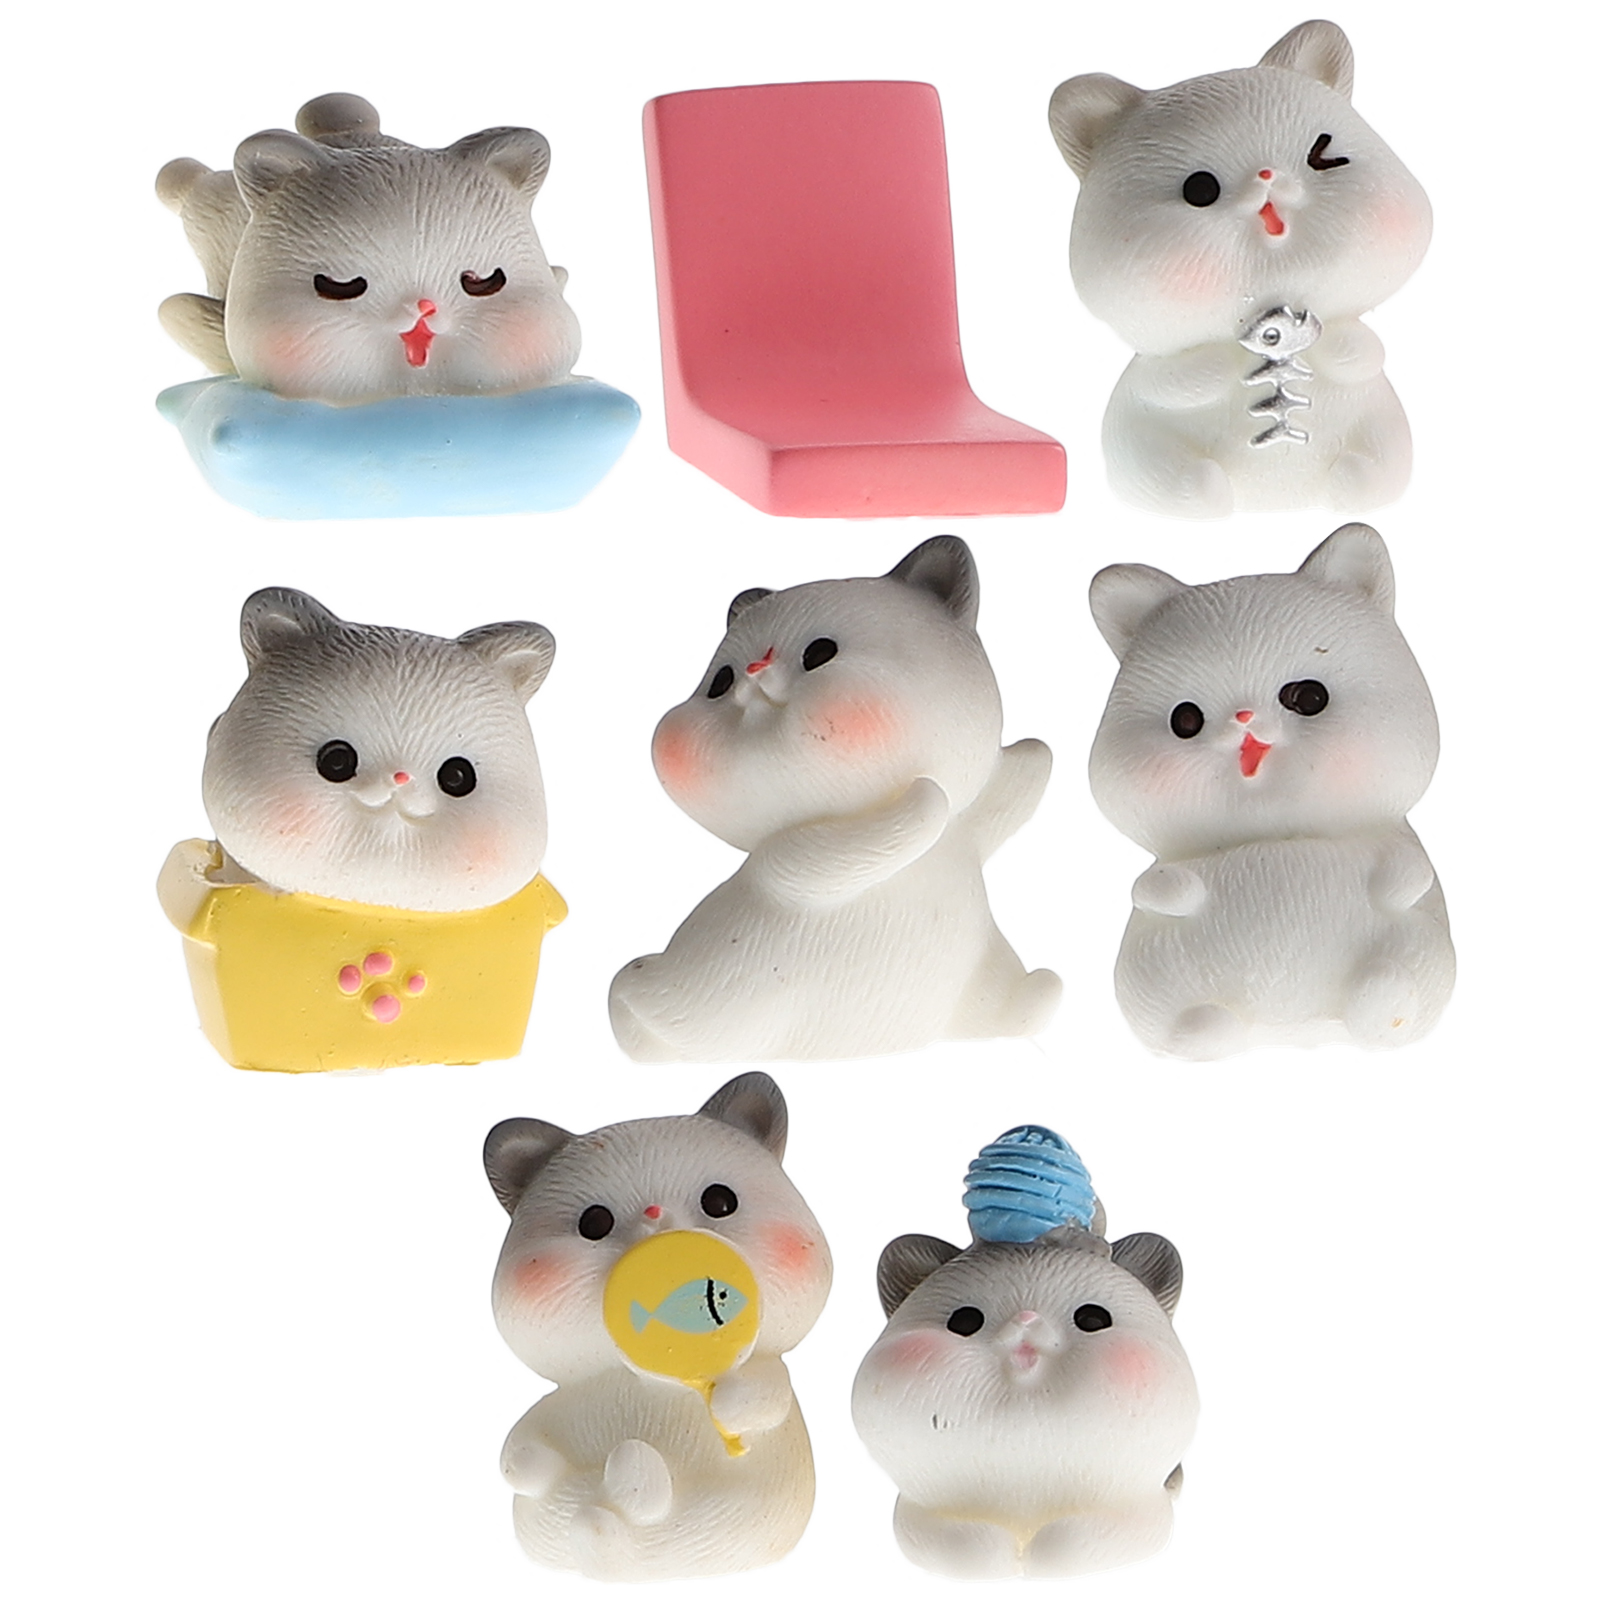 Cat Figurines Animals Figures Desktop Small Ornaments DIY Diaper Bag ...